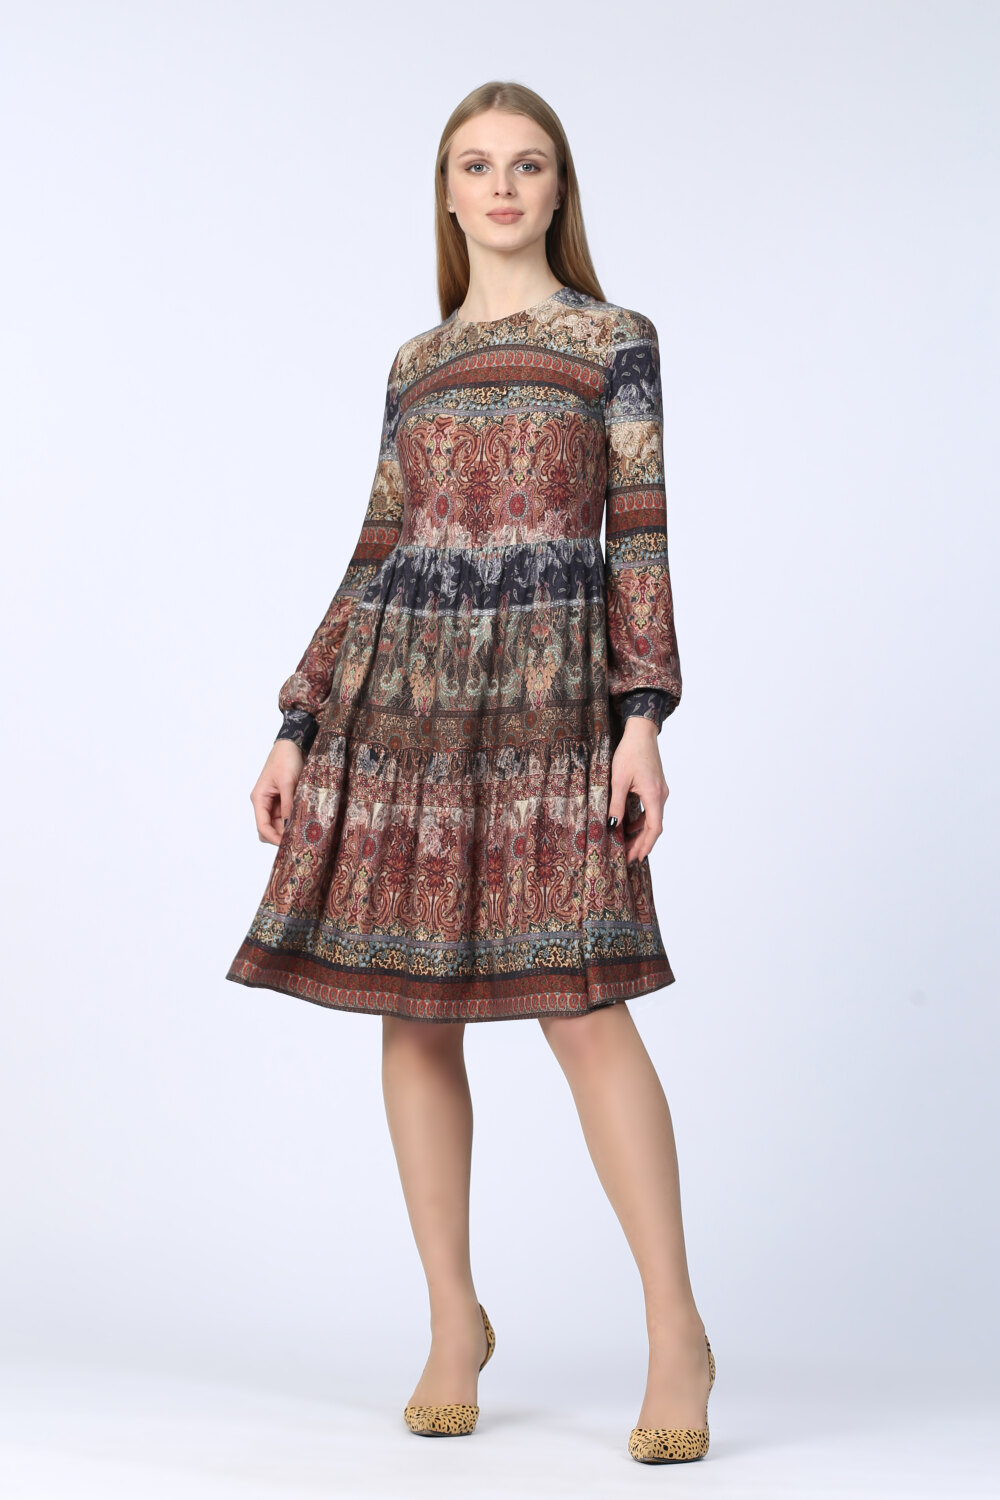 Платье женское "Каскад" модель 624/6 бежевый купон